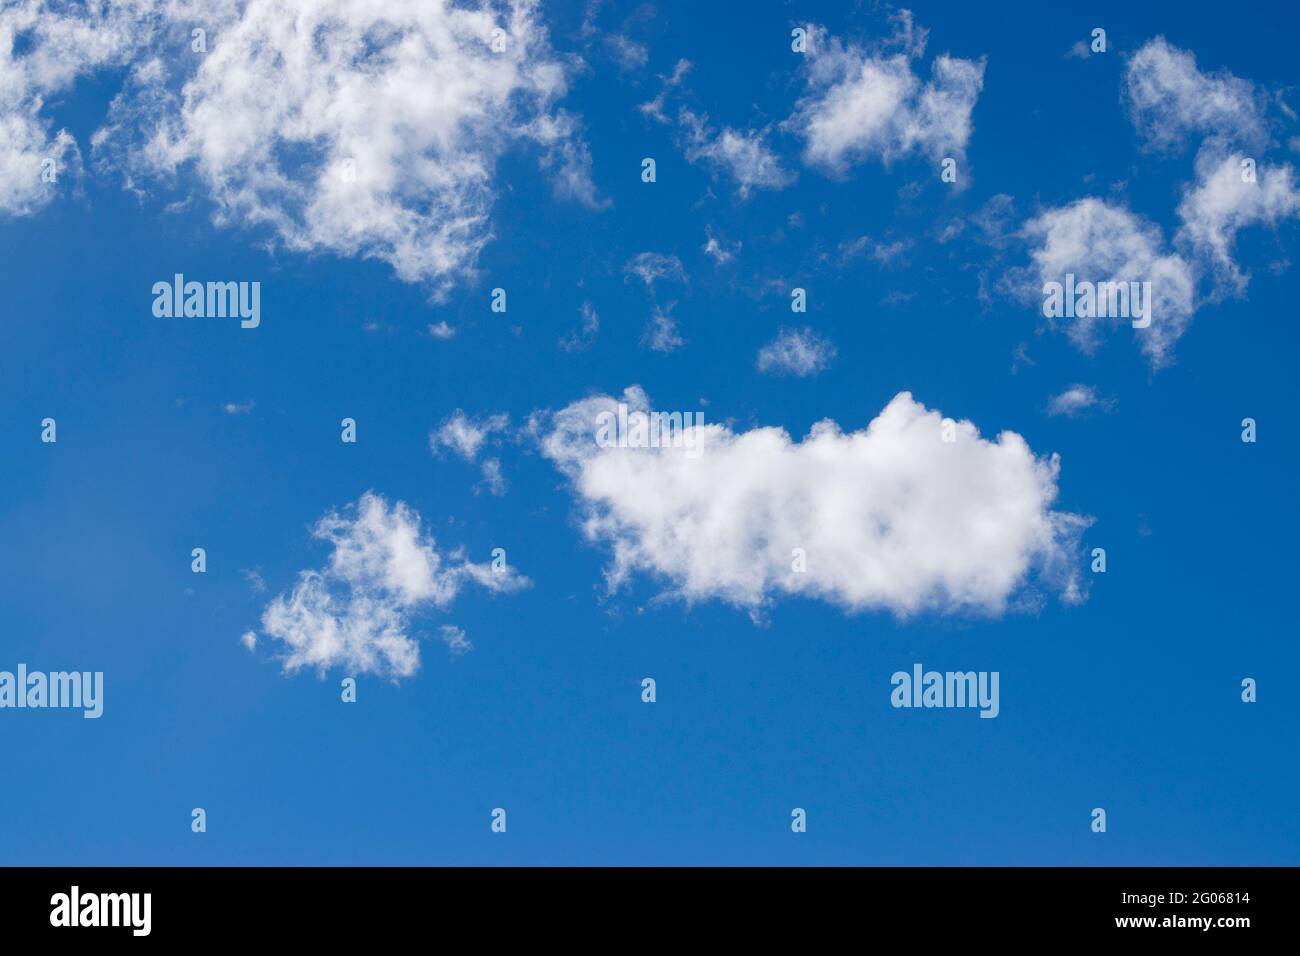 Cielo blu con nuvole bianche, immagine di riserva, Kolkata, Calcuatta, Bengala Occidentale, India, immagine stock di sfondo. Foto Stock